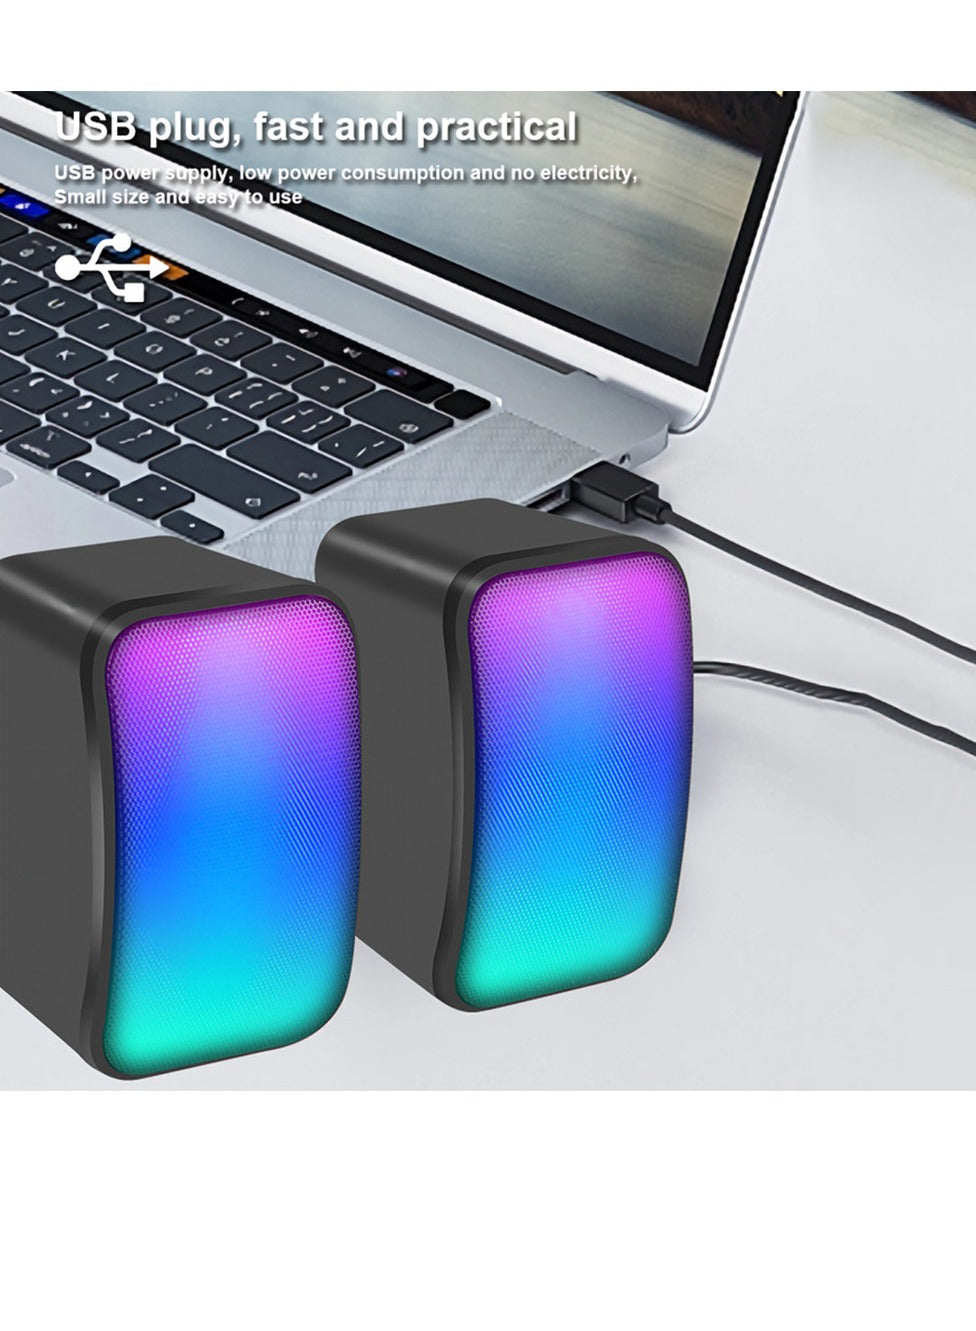 Kisonli Speaker Laptop/Komputer Gaming 2.0 RGB Lights X17